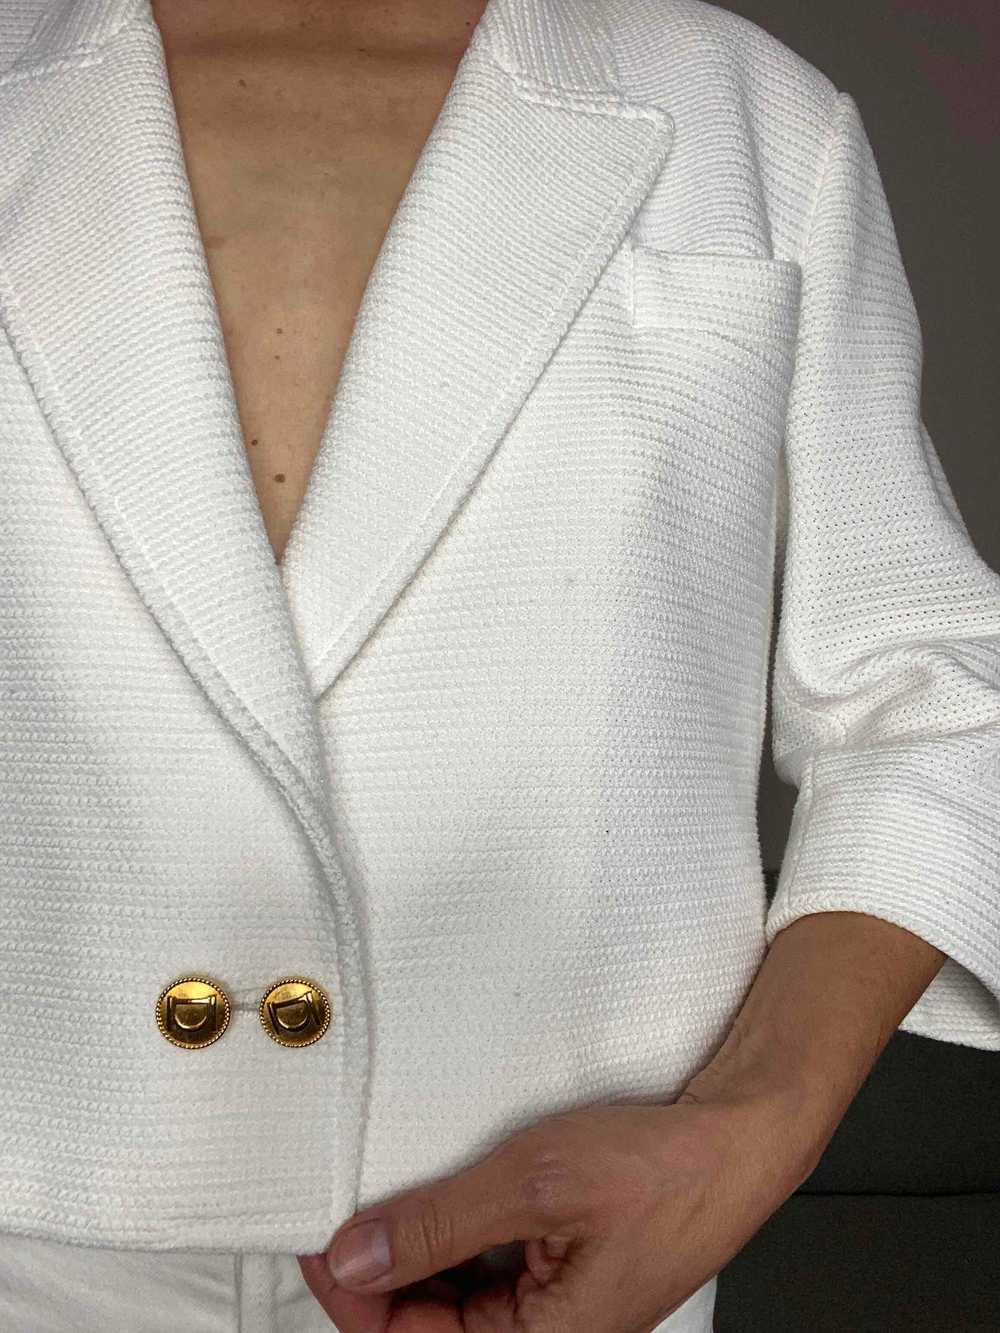 90's short jacket - Beautiful white blazer - image 4